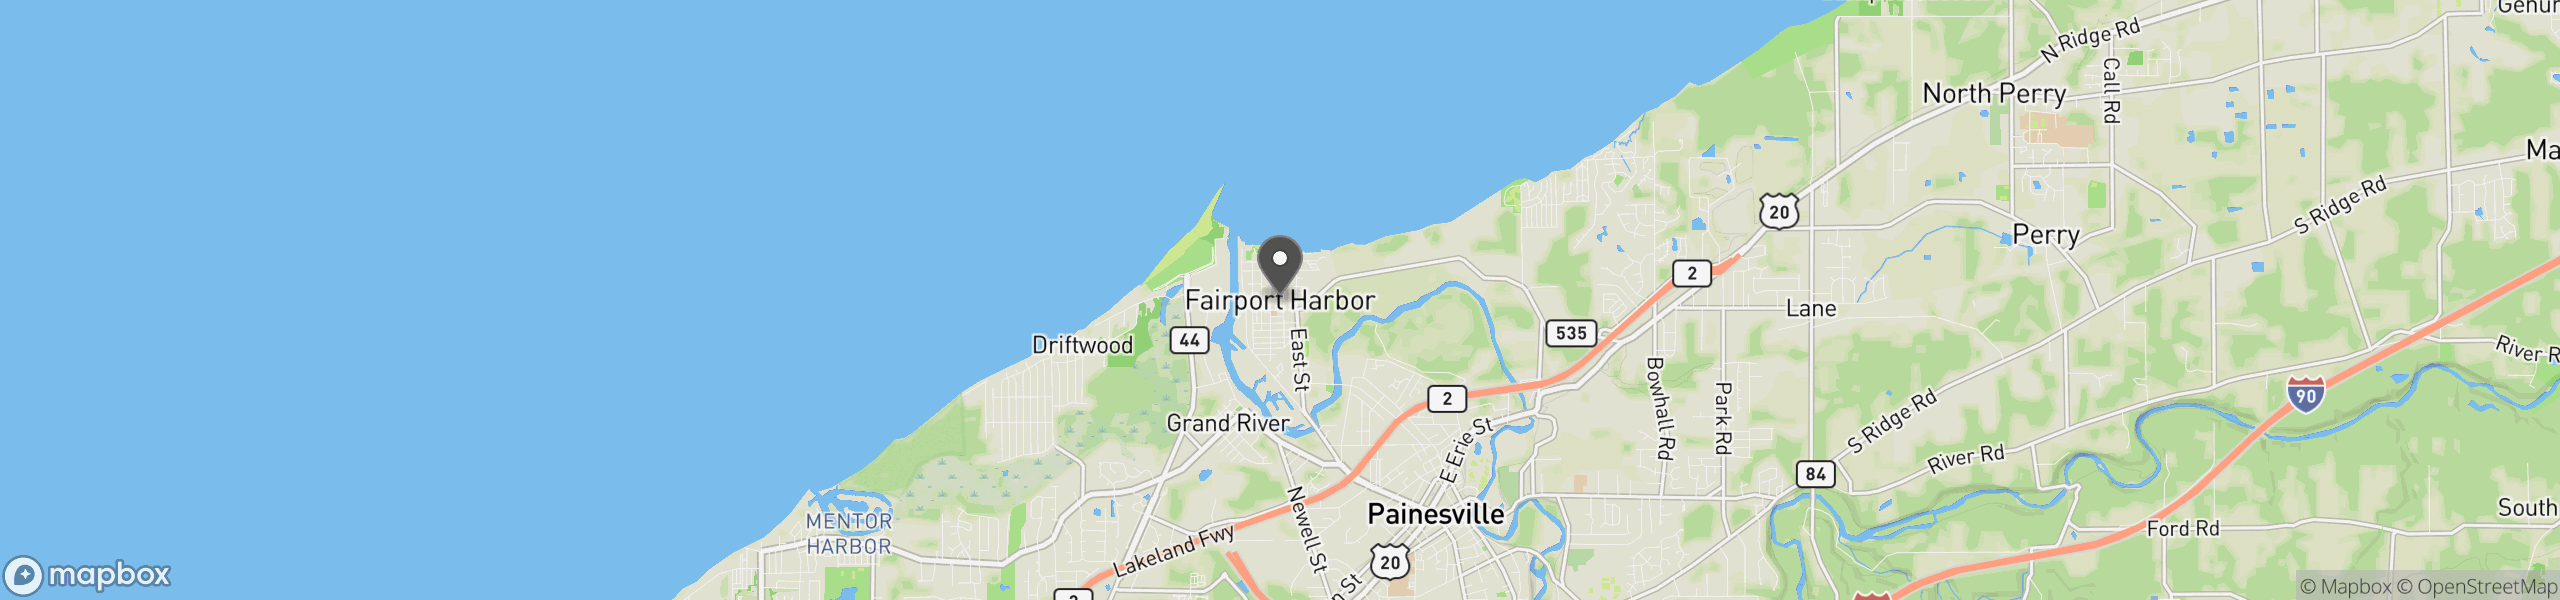 Fairport Harbor, OH